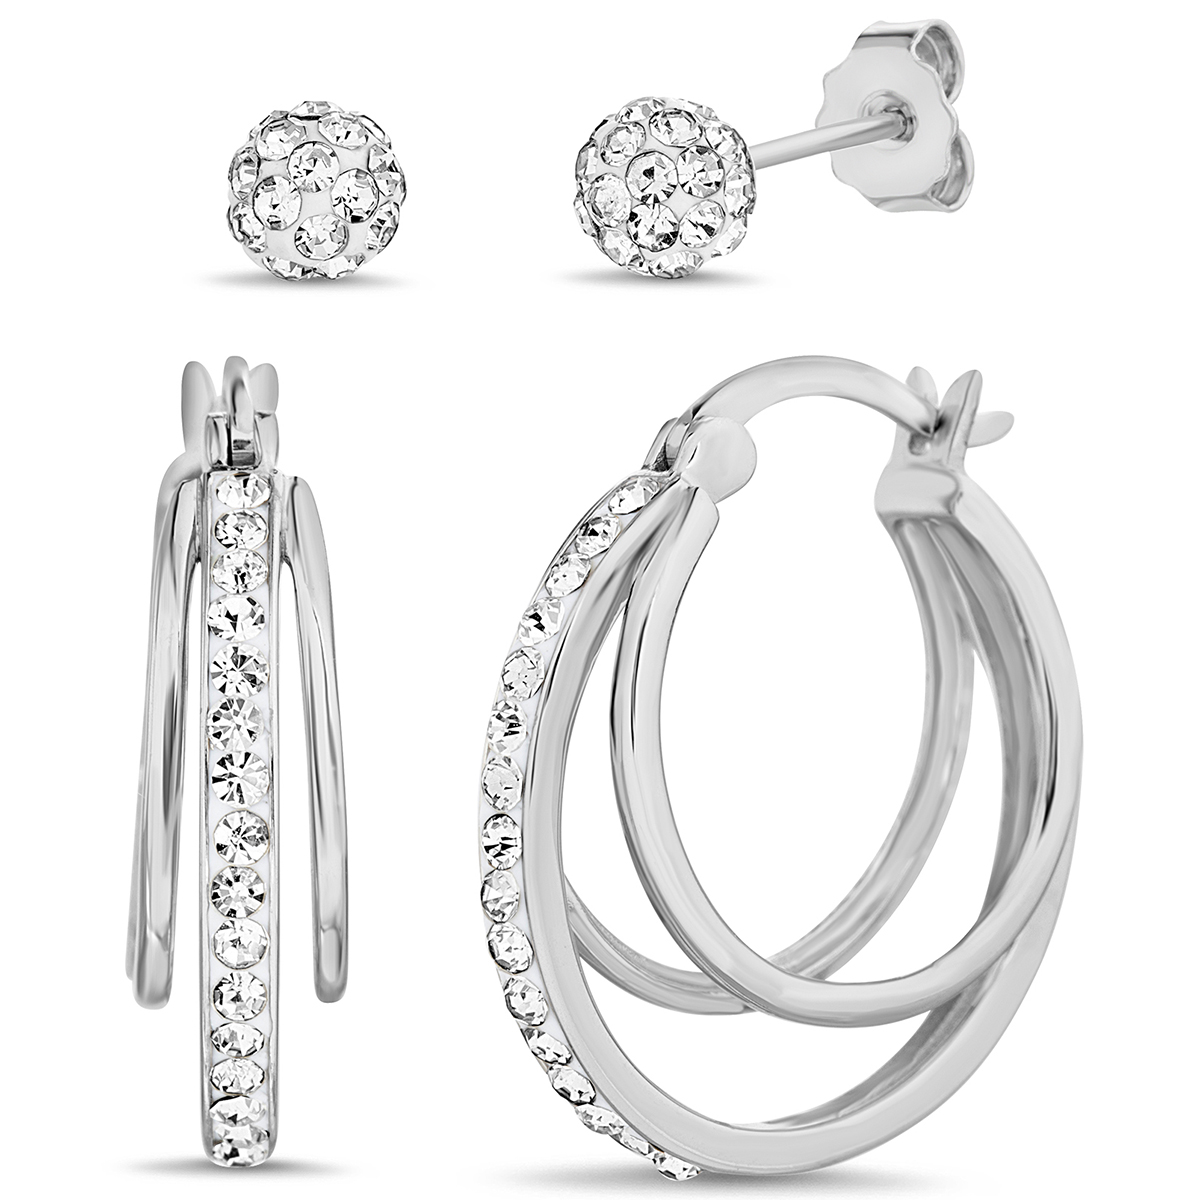 Set Of 2 Split Hoop Earrings With Crystals & Studs